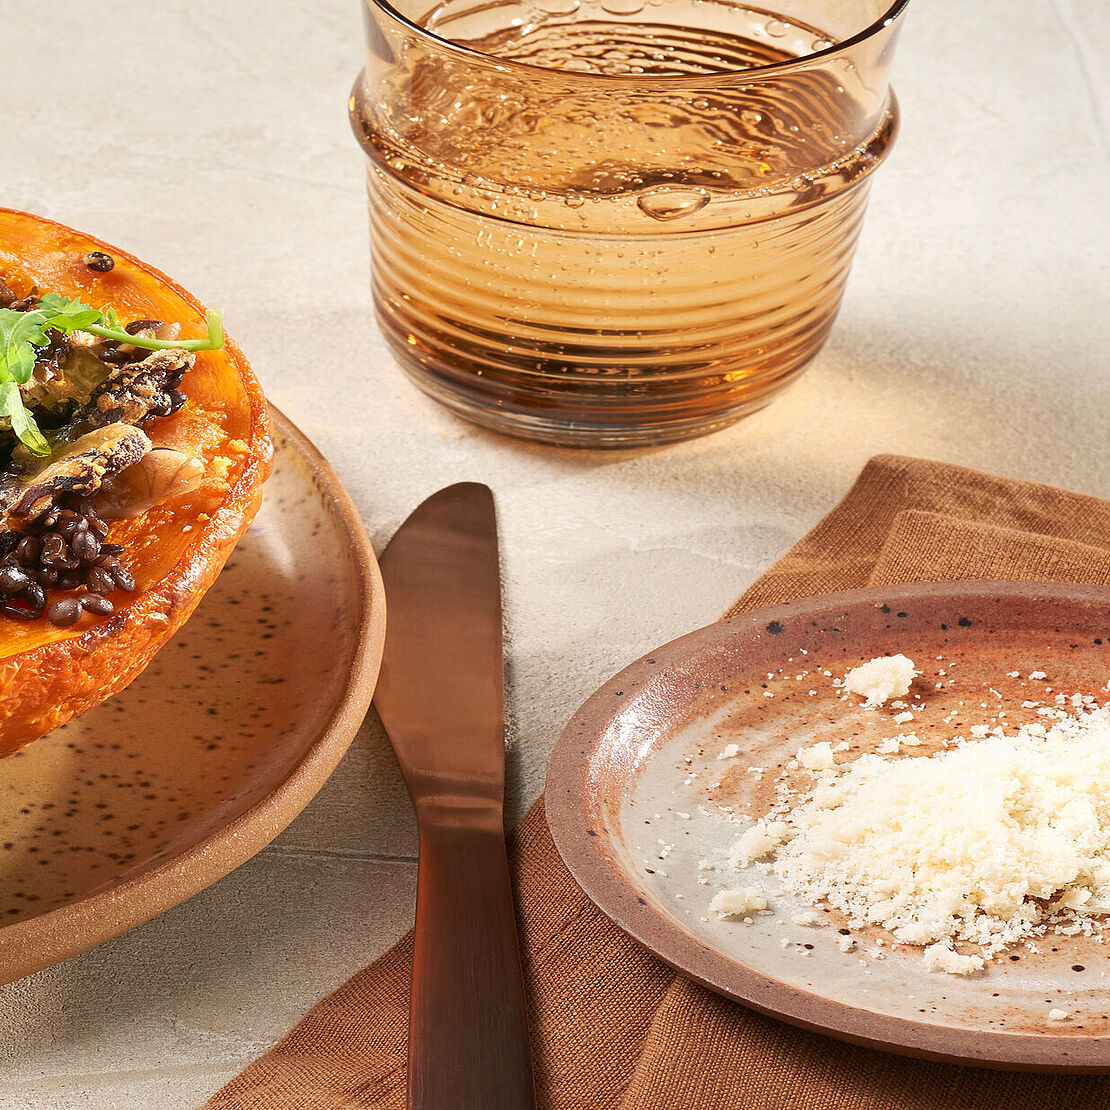 Hokkaido Kürbis gefüllt mit Giovanni Ferrari-Grana Padano, ergänzt durch Chicorée, Rucola und Granatapfelkerne – eine kulinarische Entdeckung